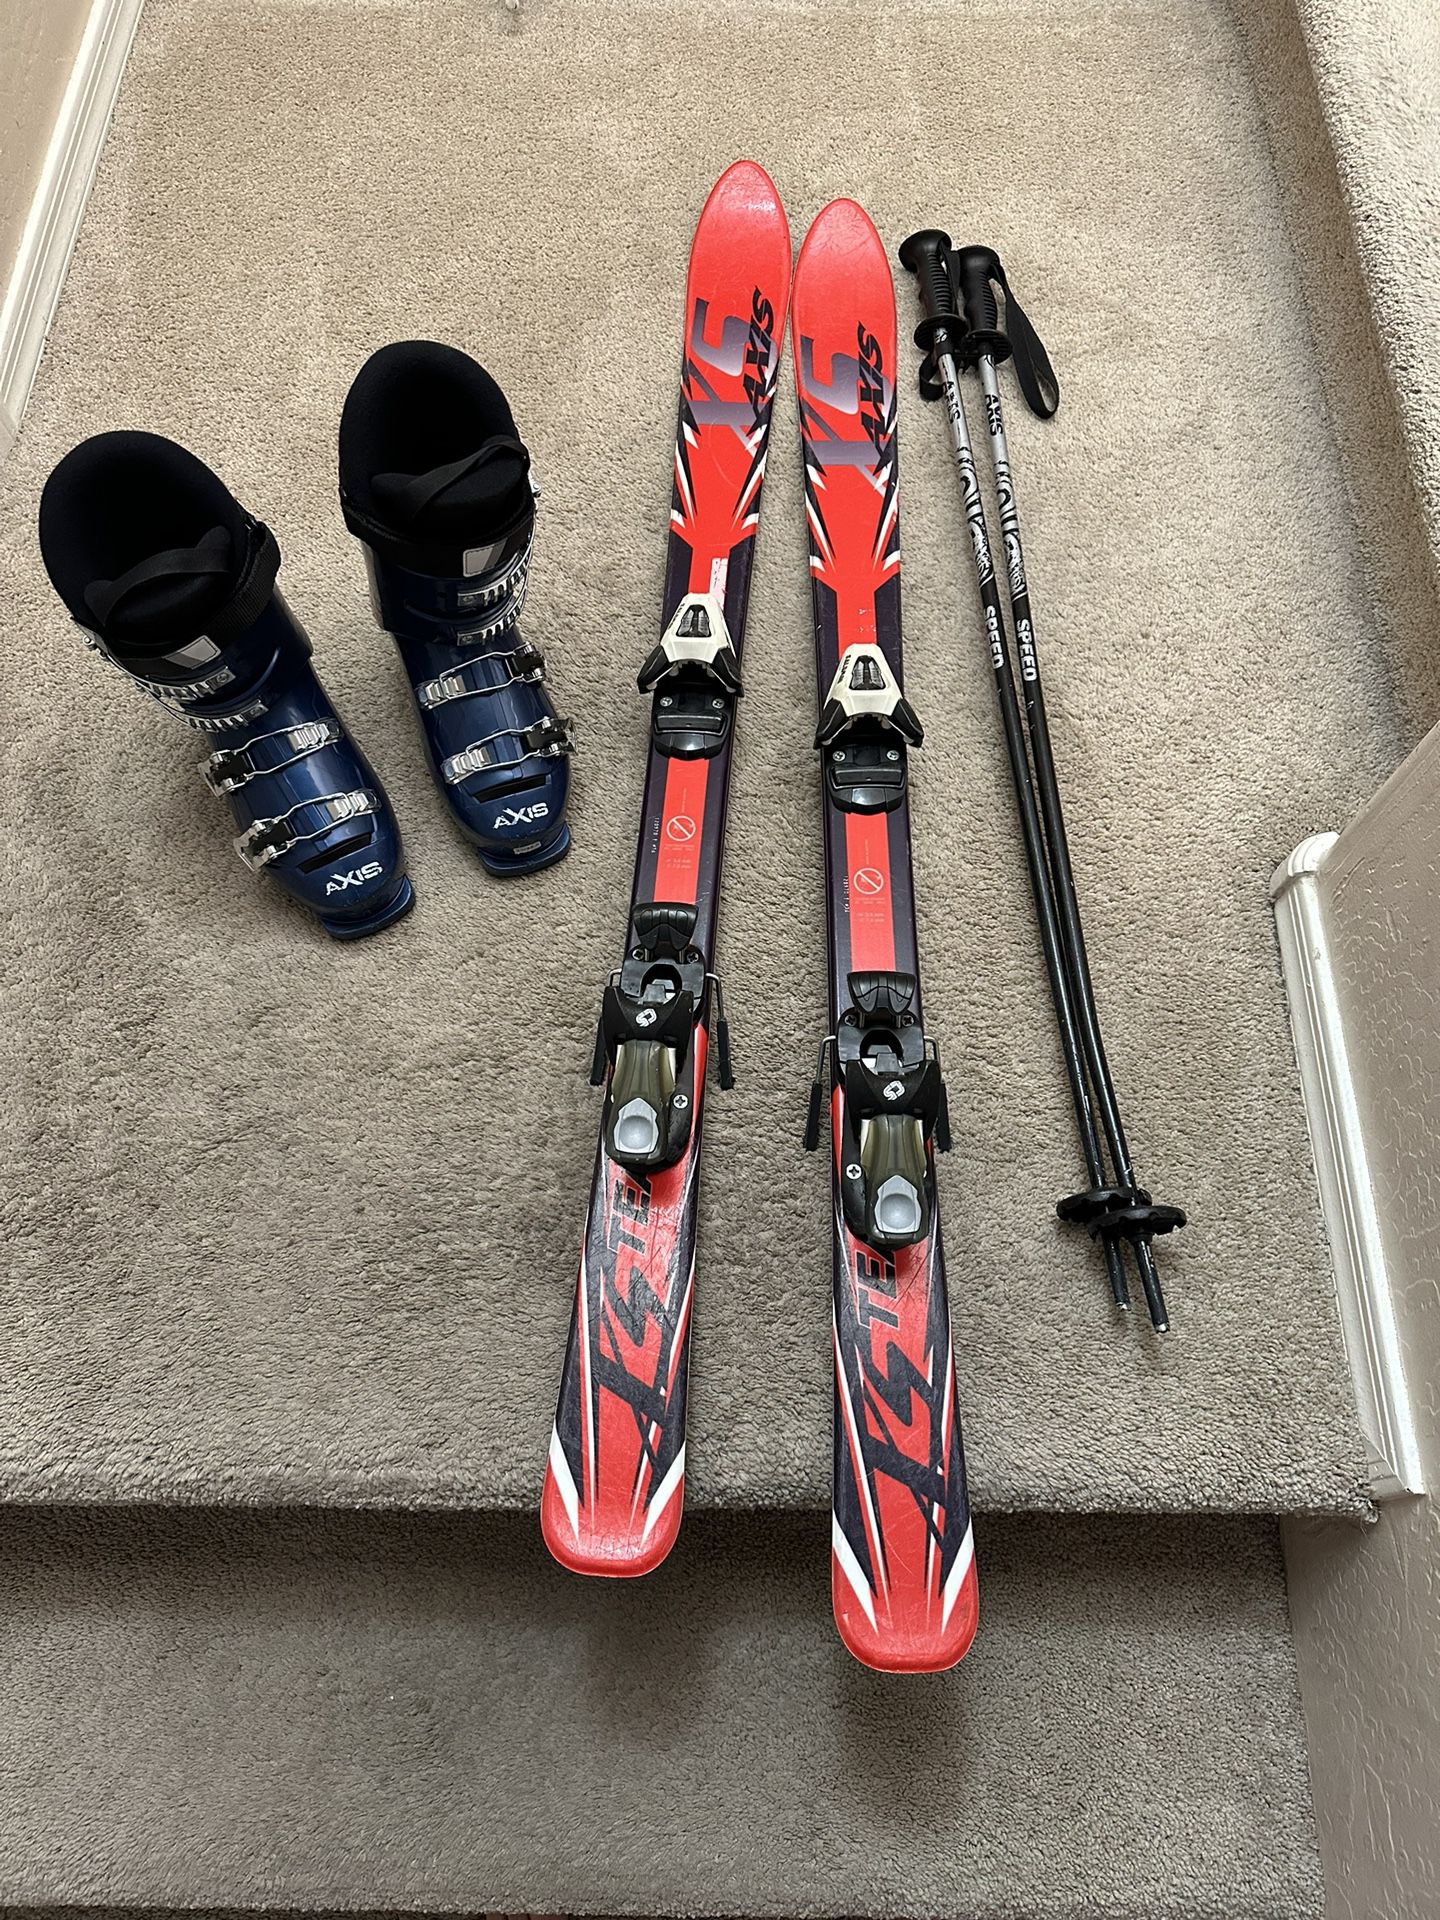 Snow ski set